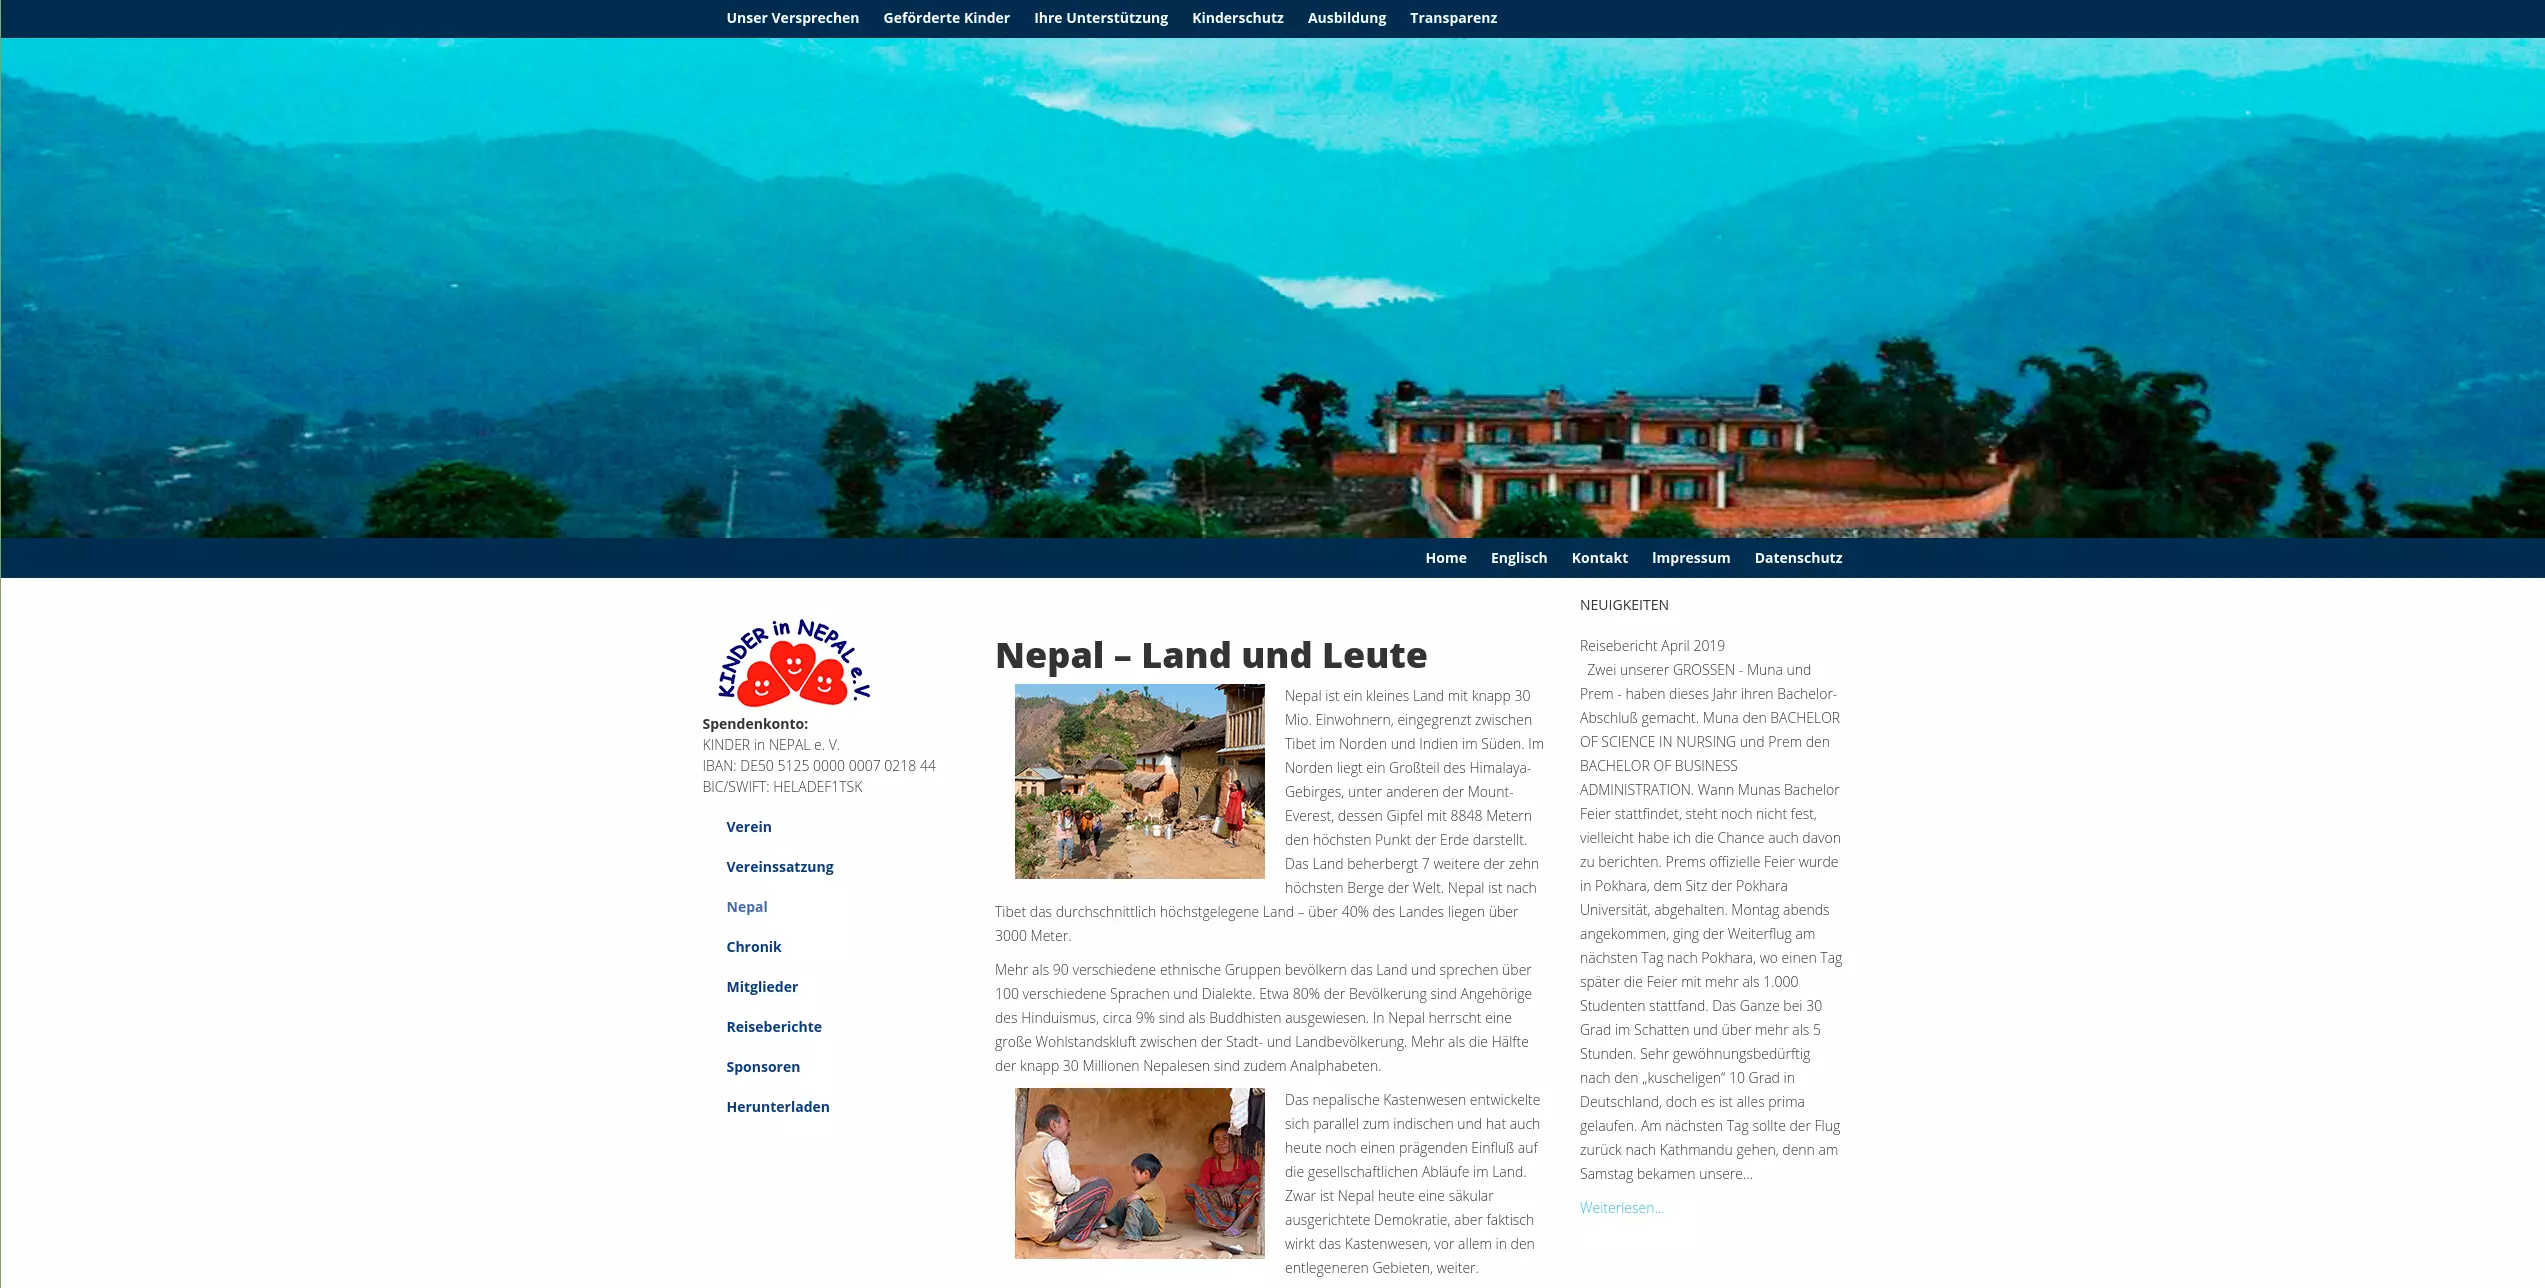 Kinder in Nepal e.V.